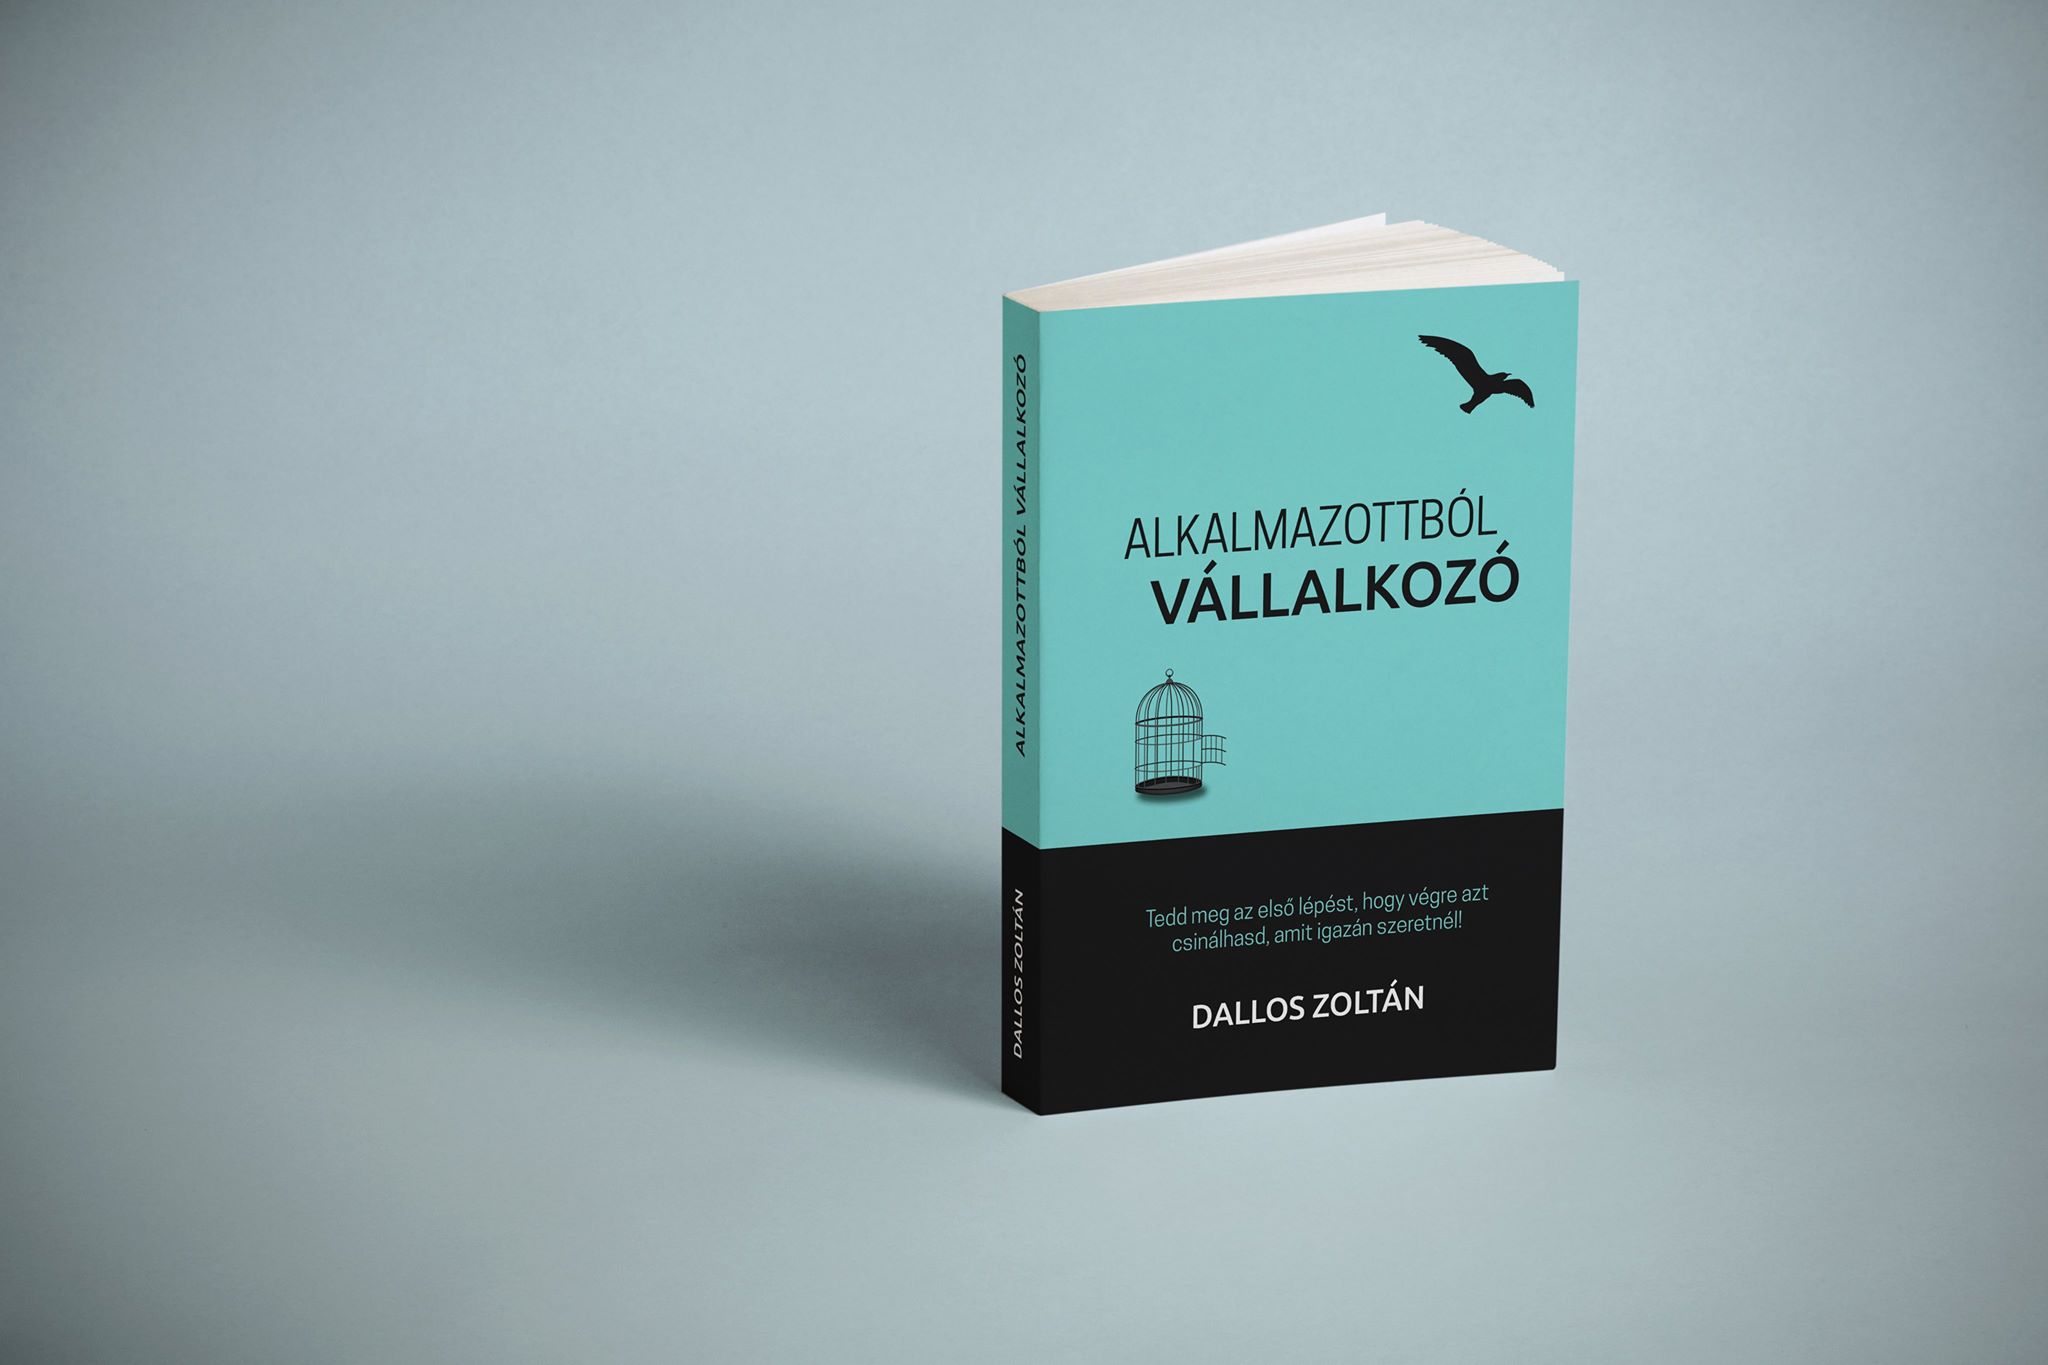 Könyvajánló: Dallos Zoltán – Alkalmazottból vállalkozó